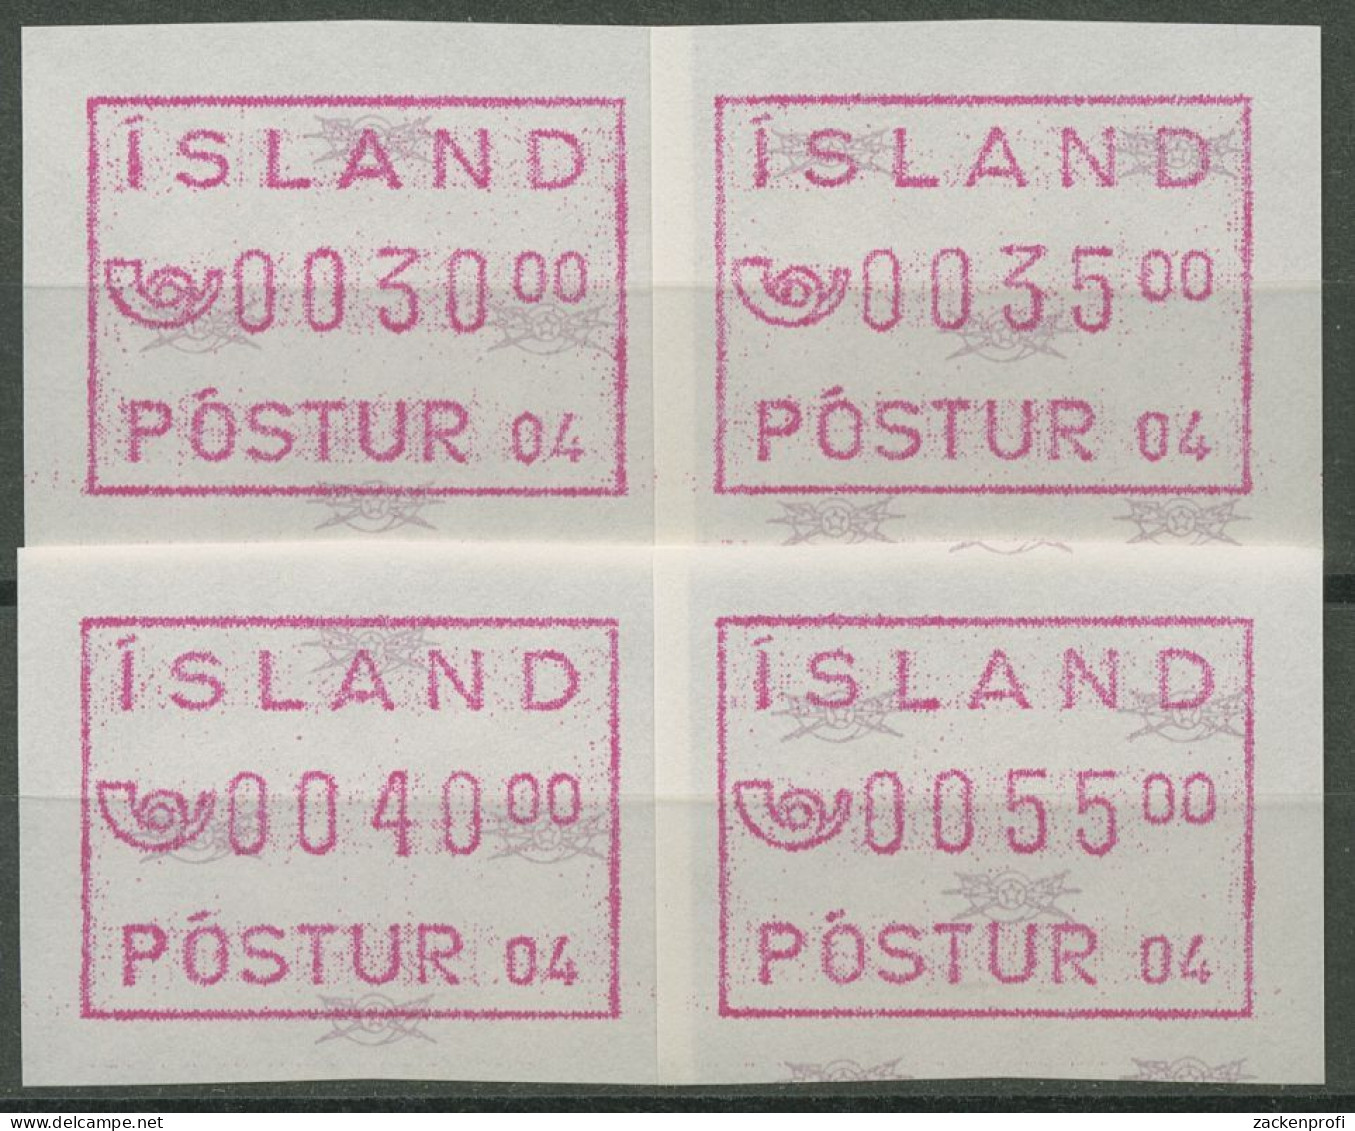 Island ATM 1993 Freimarke Automat 04, Satz 4 Werte, ATM 2.2 S2 Postfrisch - Vignettes D'affranchissement (Frama)